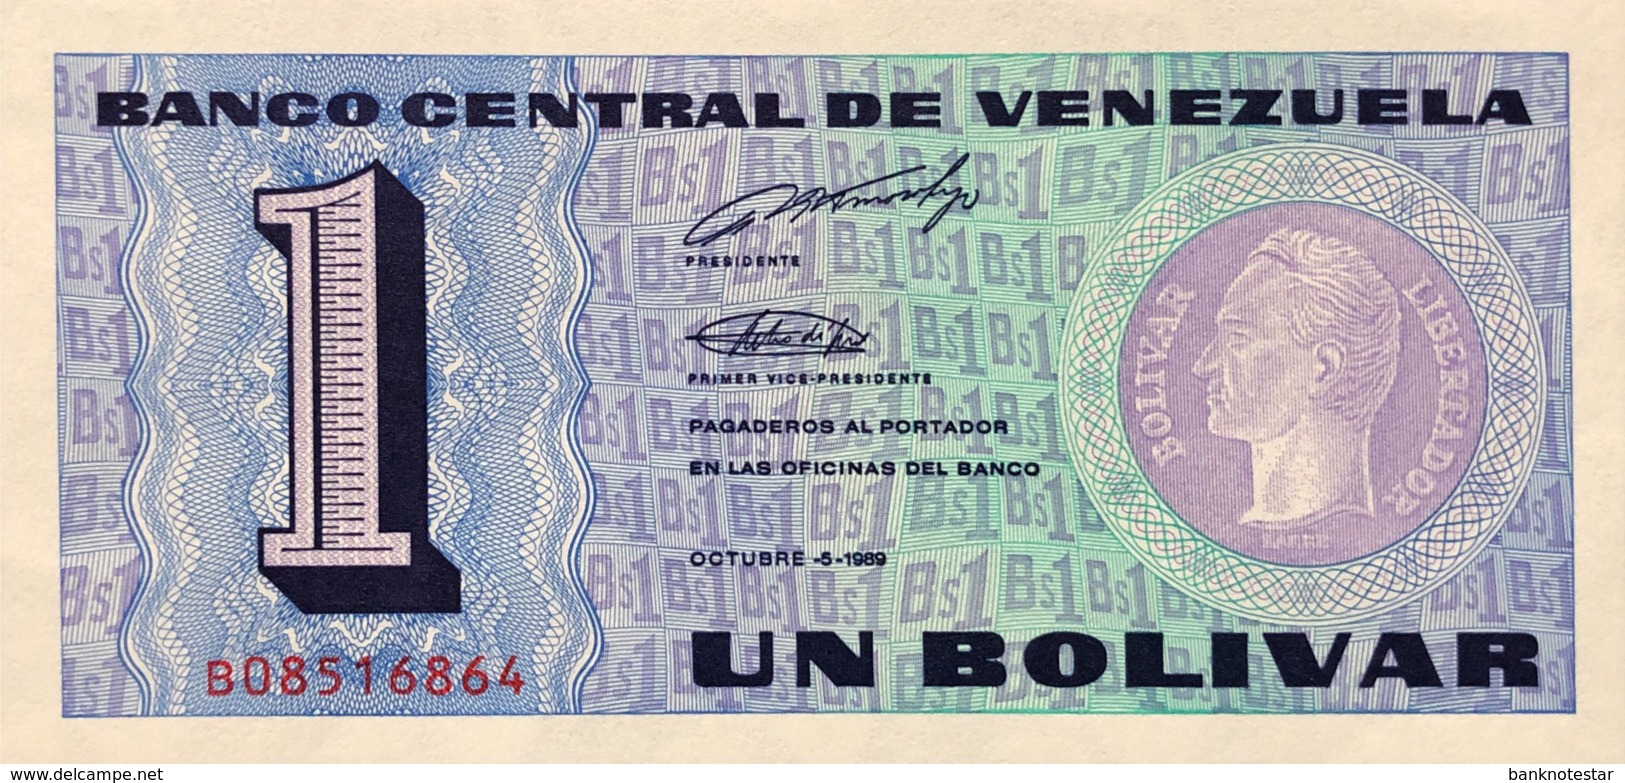 Venezuela 1 Bolivar, P-68 (1989) - UNC - Venezuela